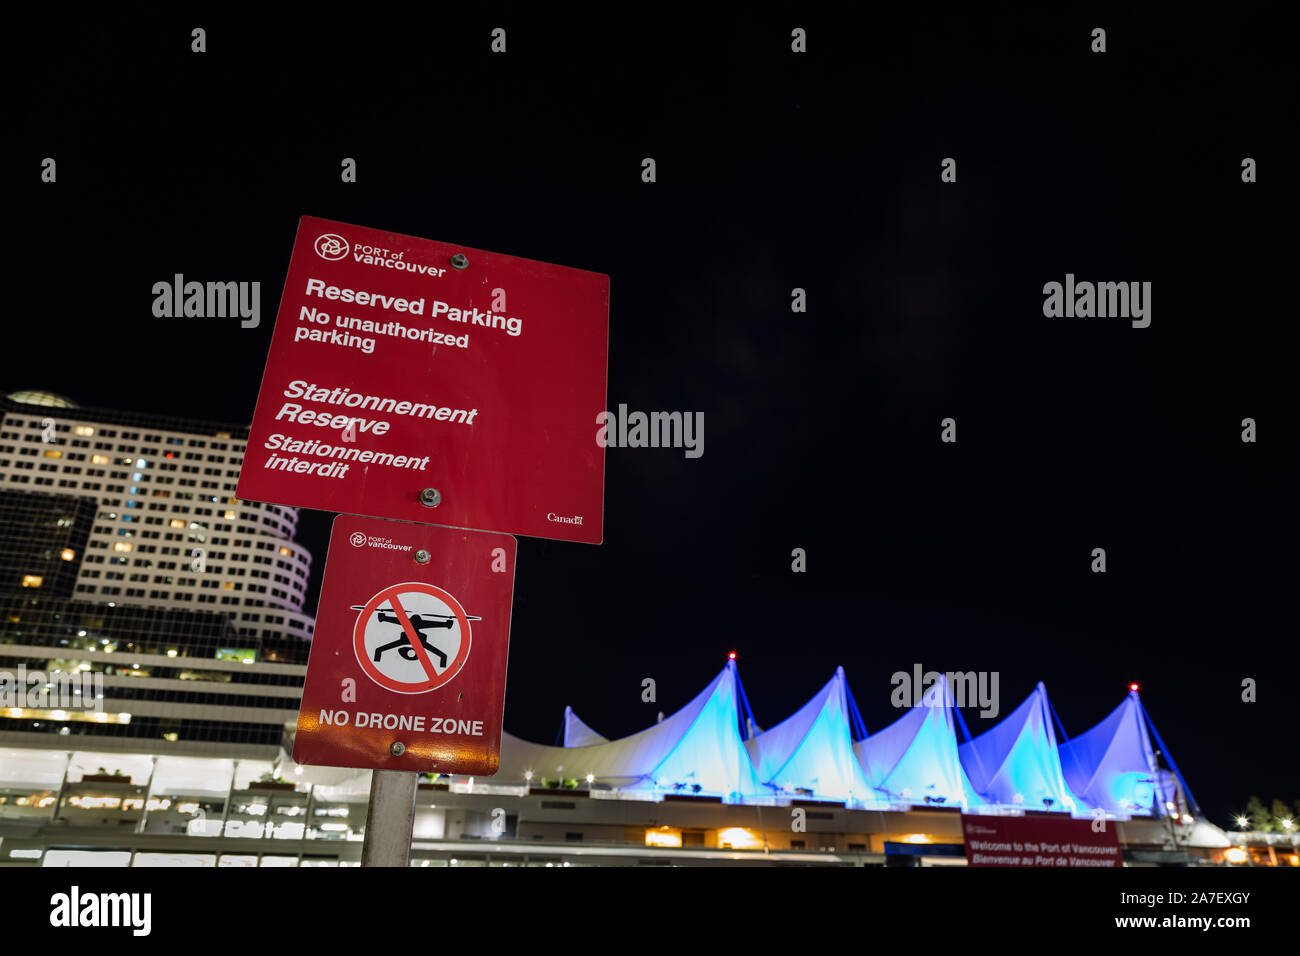 VANCOUVER, BC, KANADA - 06. SEPTEMBER 2019: Schild mit der Werbung für die Beschränkung von Drohnenflügen in der Gegend vor dem Five Sails Pan Pacific Hotel in Stockfoto